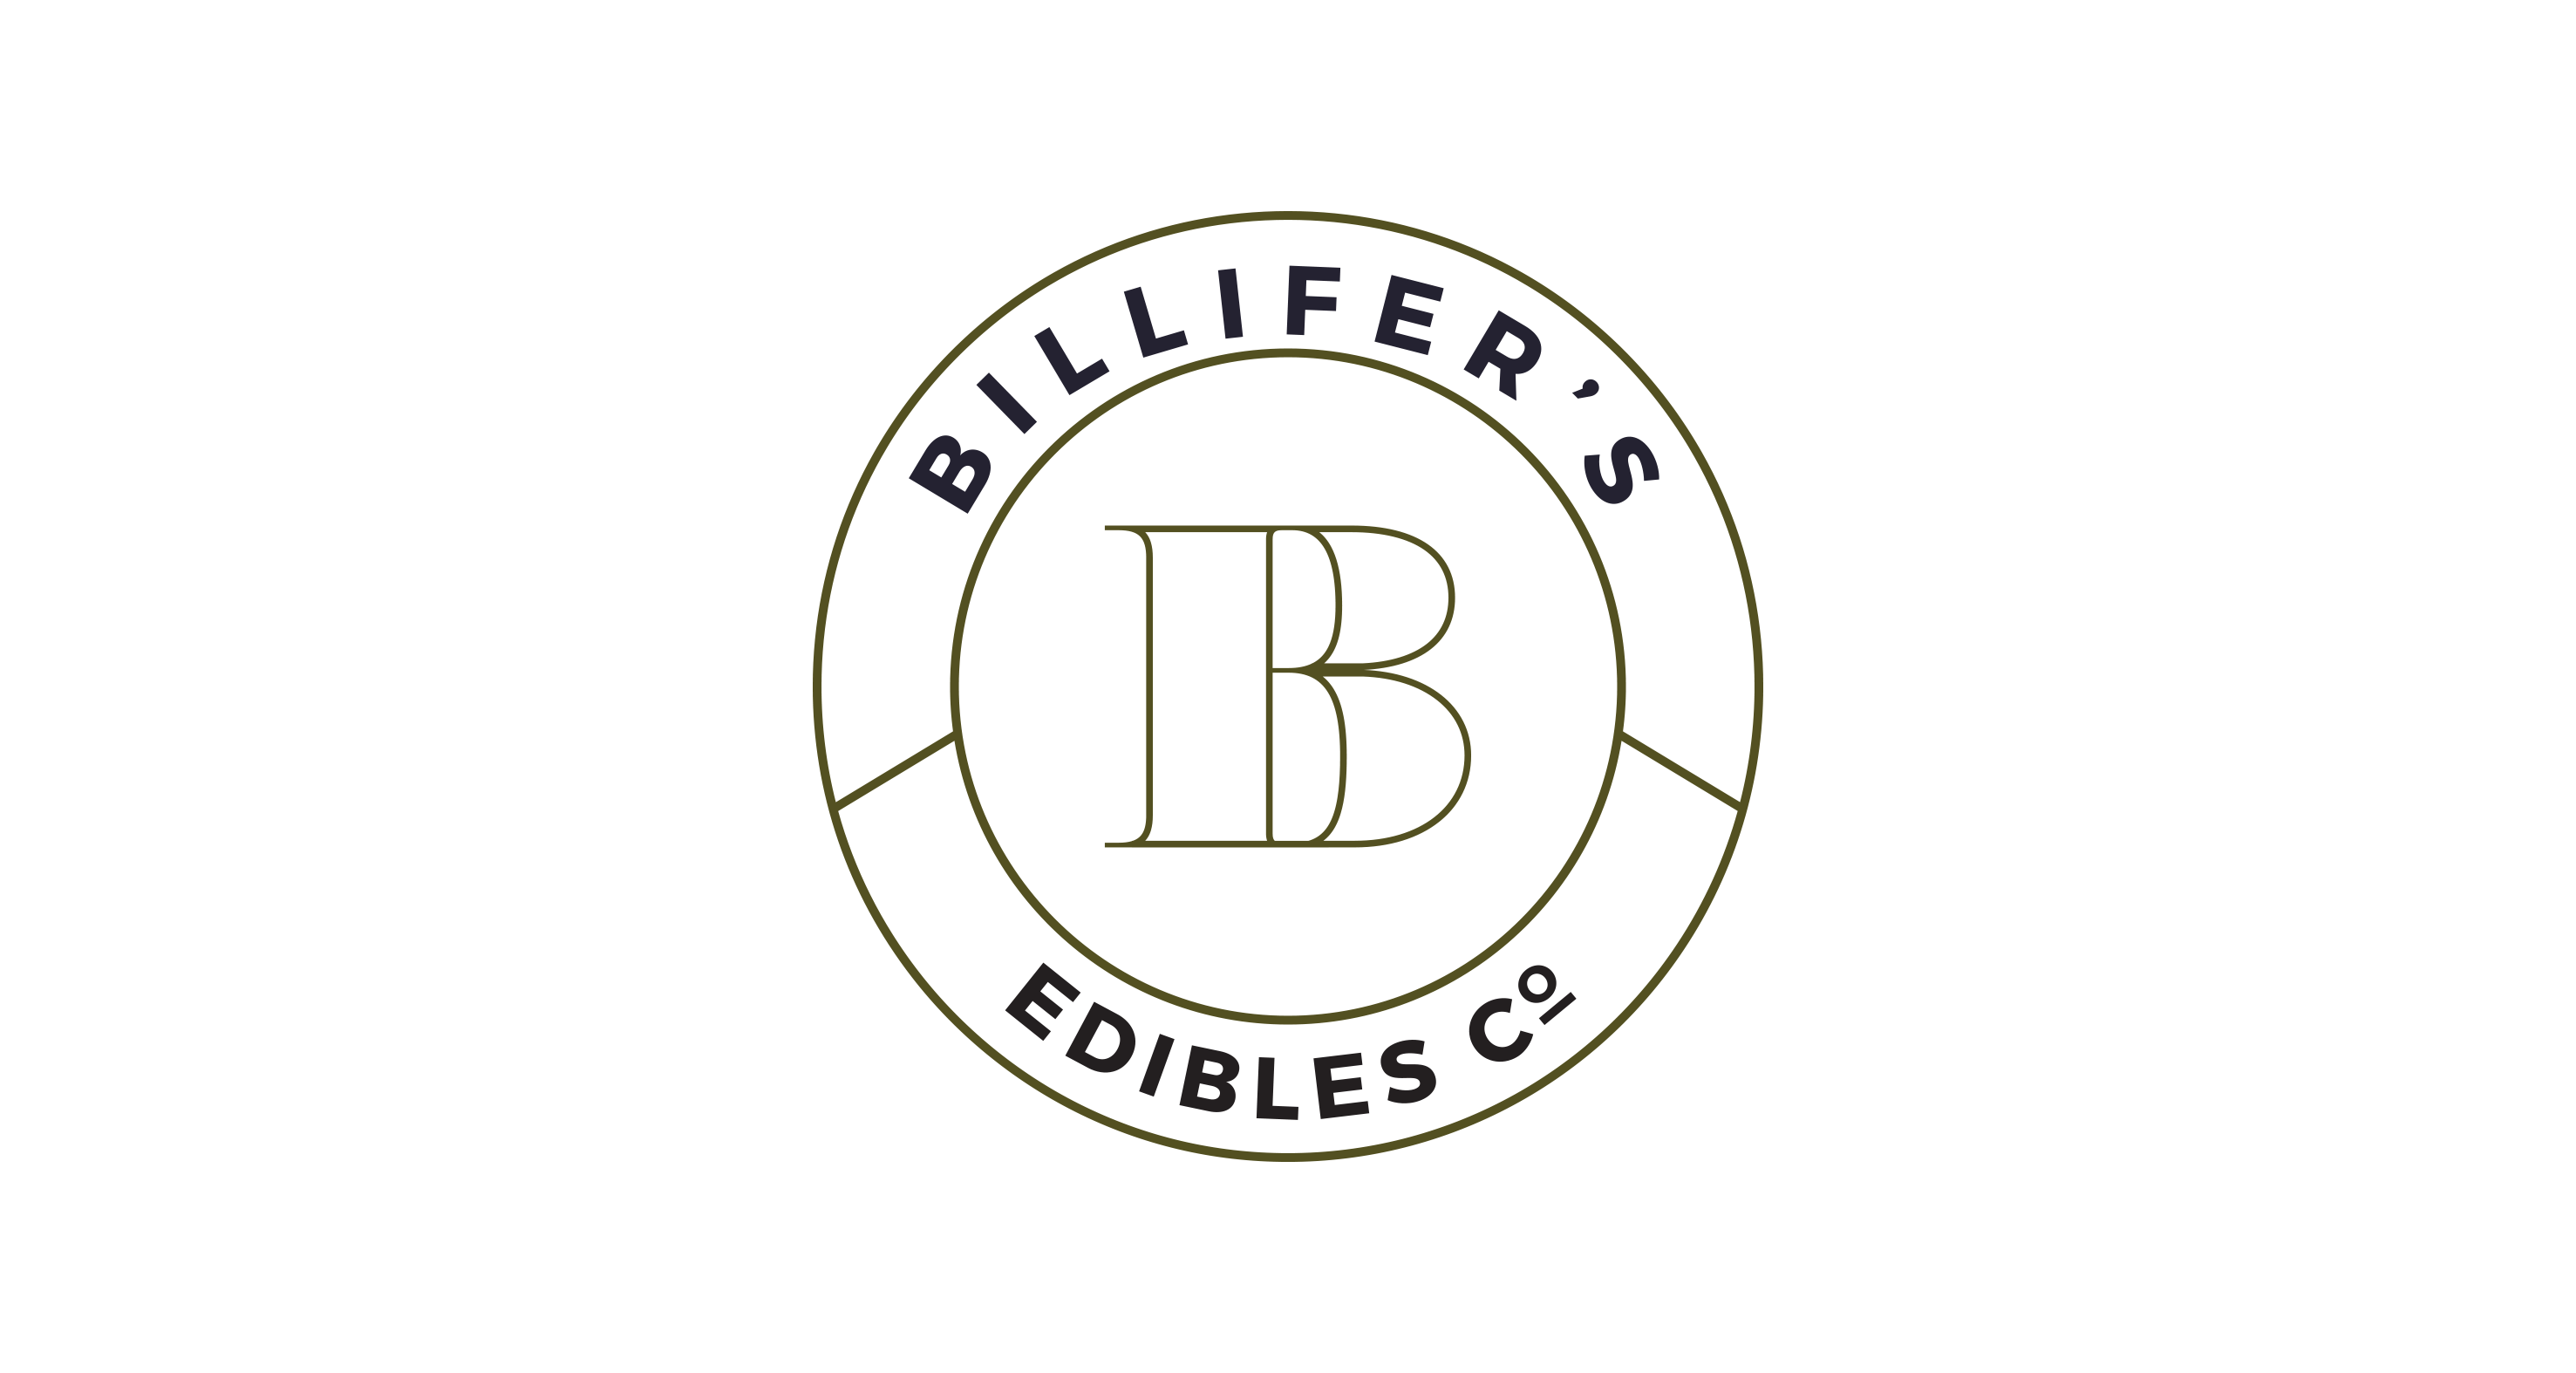 Billifers_Badge_Logo_Peterman_Design_Firm